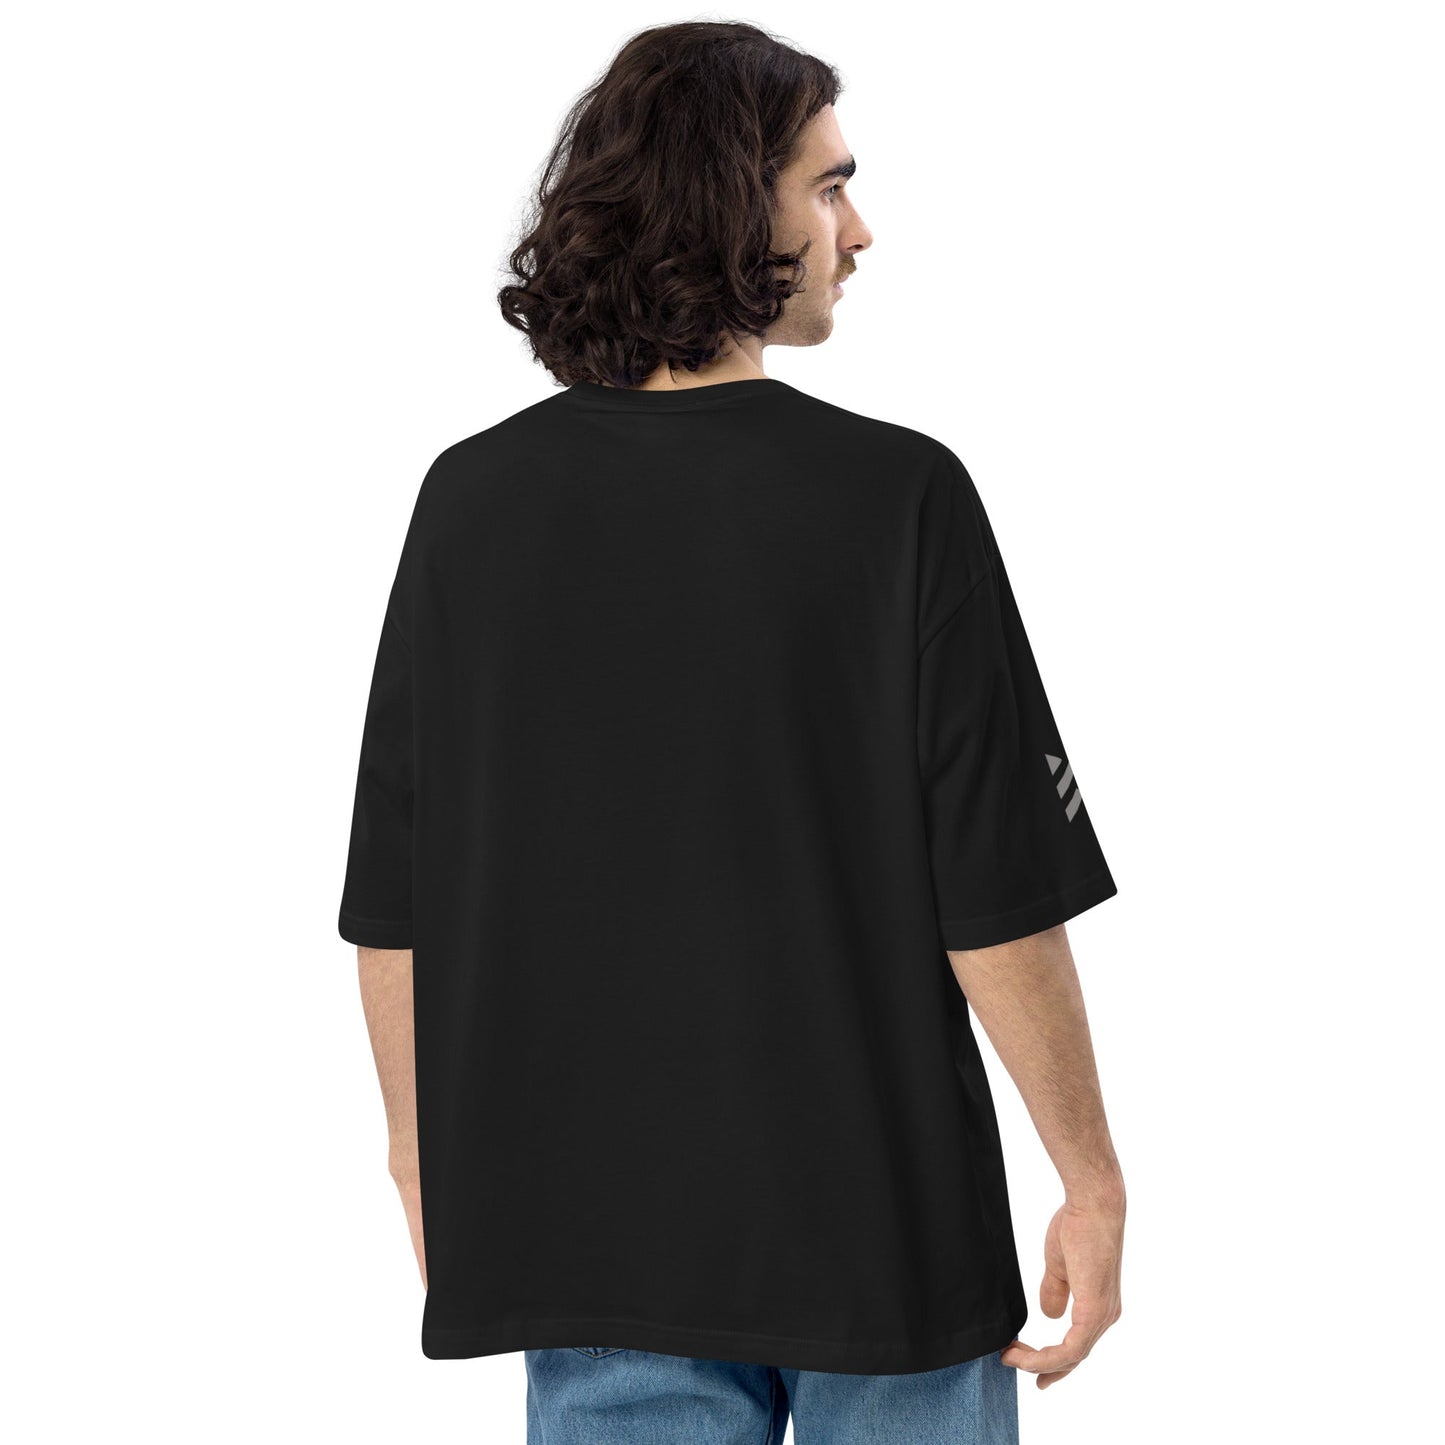 BlackMars oversized t-shirt - Premium  from BlackMars  - Just £28.50! Shop now at BlackMars 28.50BlackMars 